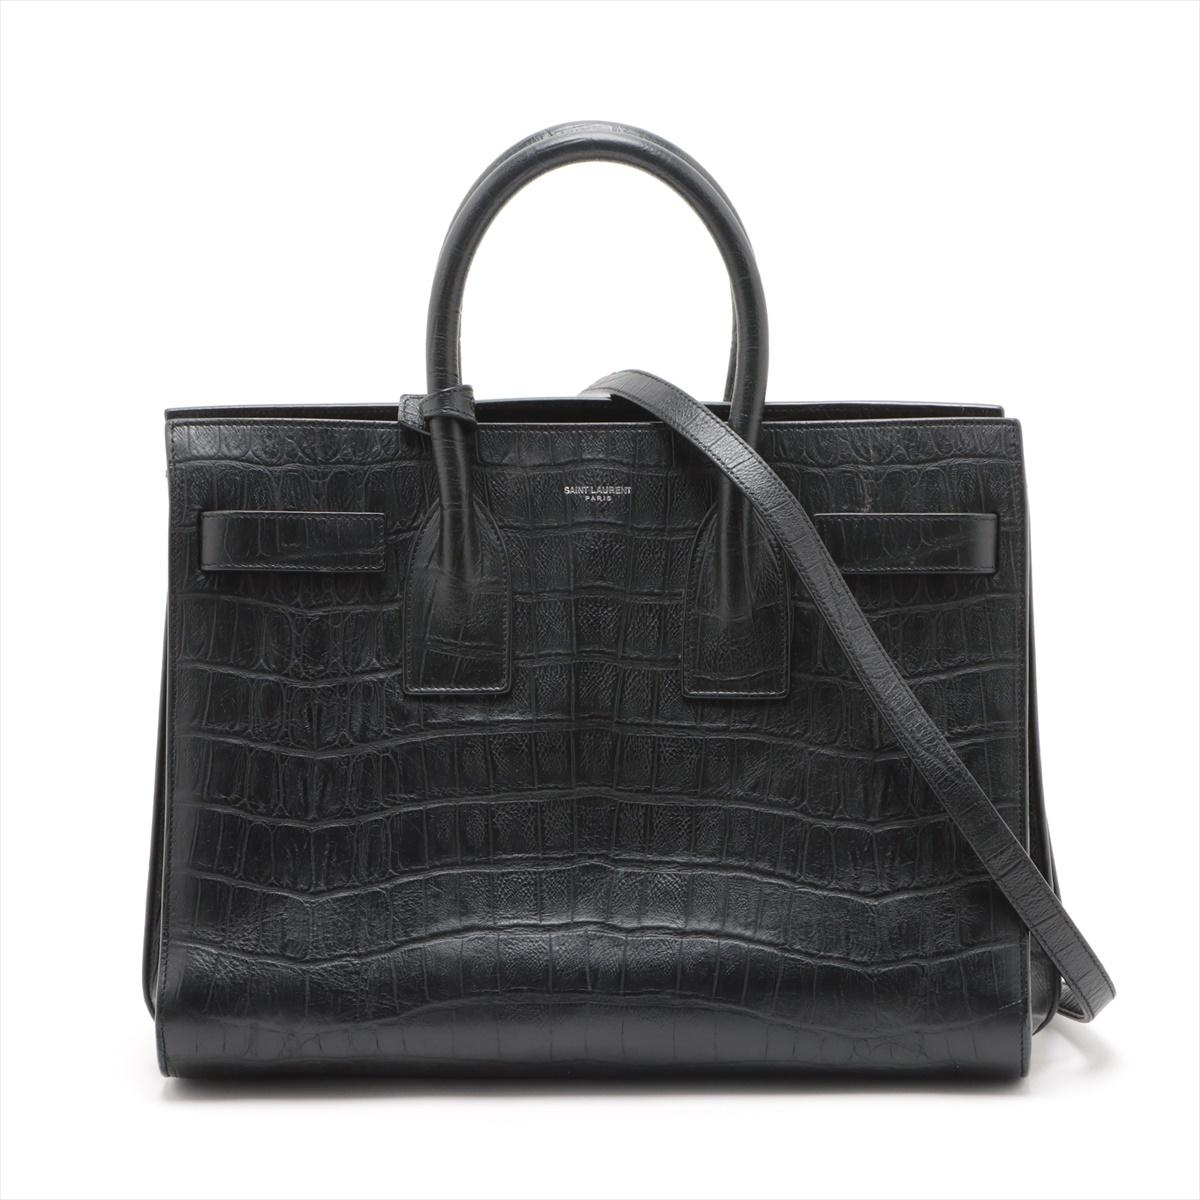 Le sac de jour en crocodile noir de Saint Laurent Paris est un accessoire luxueux et polyvalent, à la sophistication intemporelle. Confectionné en cuir gaufré exquis, ce sac à main présente une silhouette structurée aux lignes épurées et aux détails